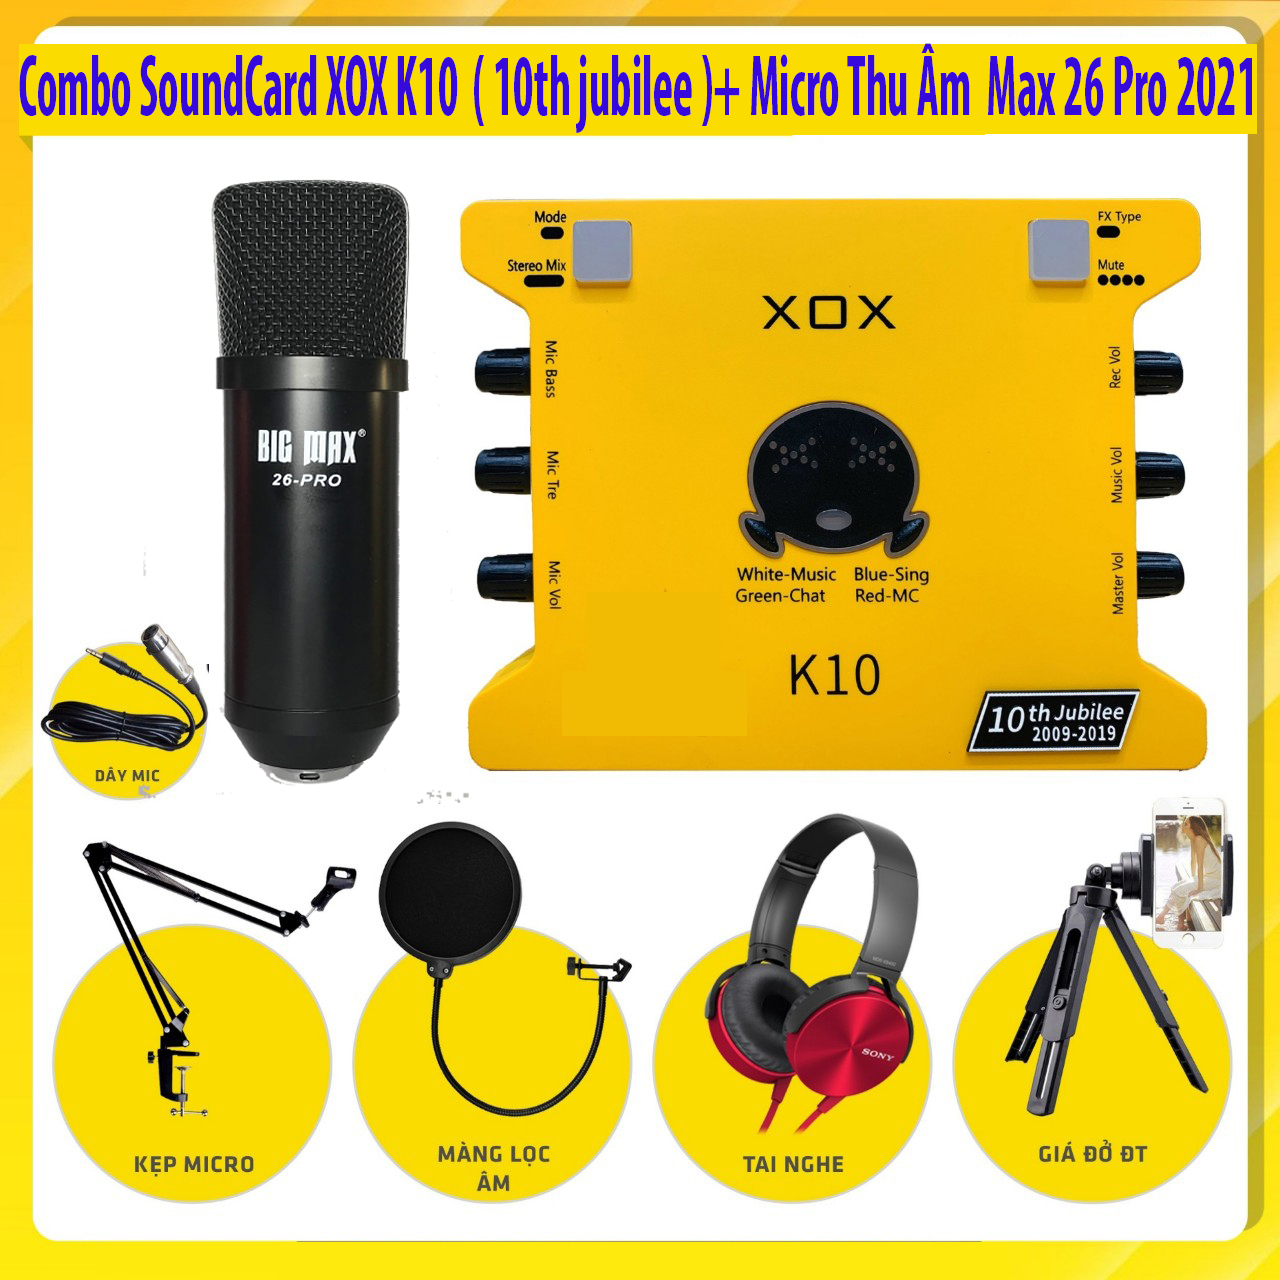 [ Combo Thu Âm Siêu Hot 2021 ] Combo SoundCard XOX K10 ( 10th jubilee ) - Micro Thu Âm Max 26 Pro Live Stream Karaoke Online Tại Nhà Chuyên Nghiệp , Combo Thu Âm + Full Phụ Kiện Phục Vụ Cho Ca Hát.Tự Biến Mình Thành Ca Sĩ Chuyên Nghiệp BH 12T